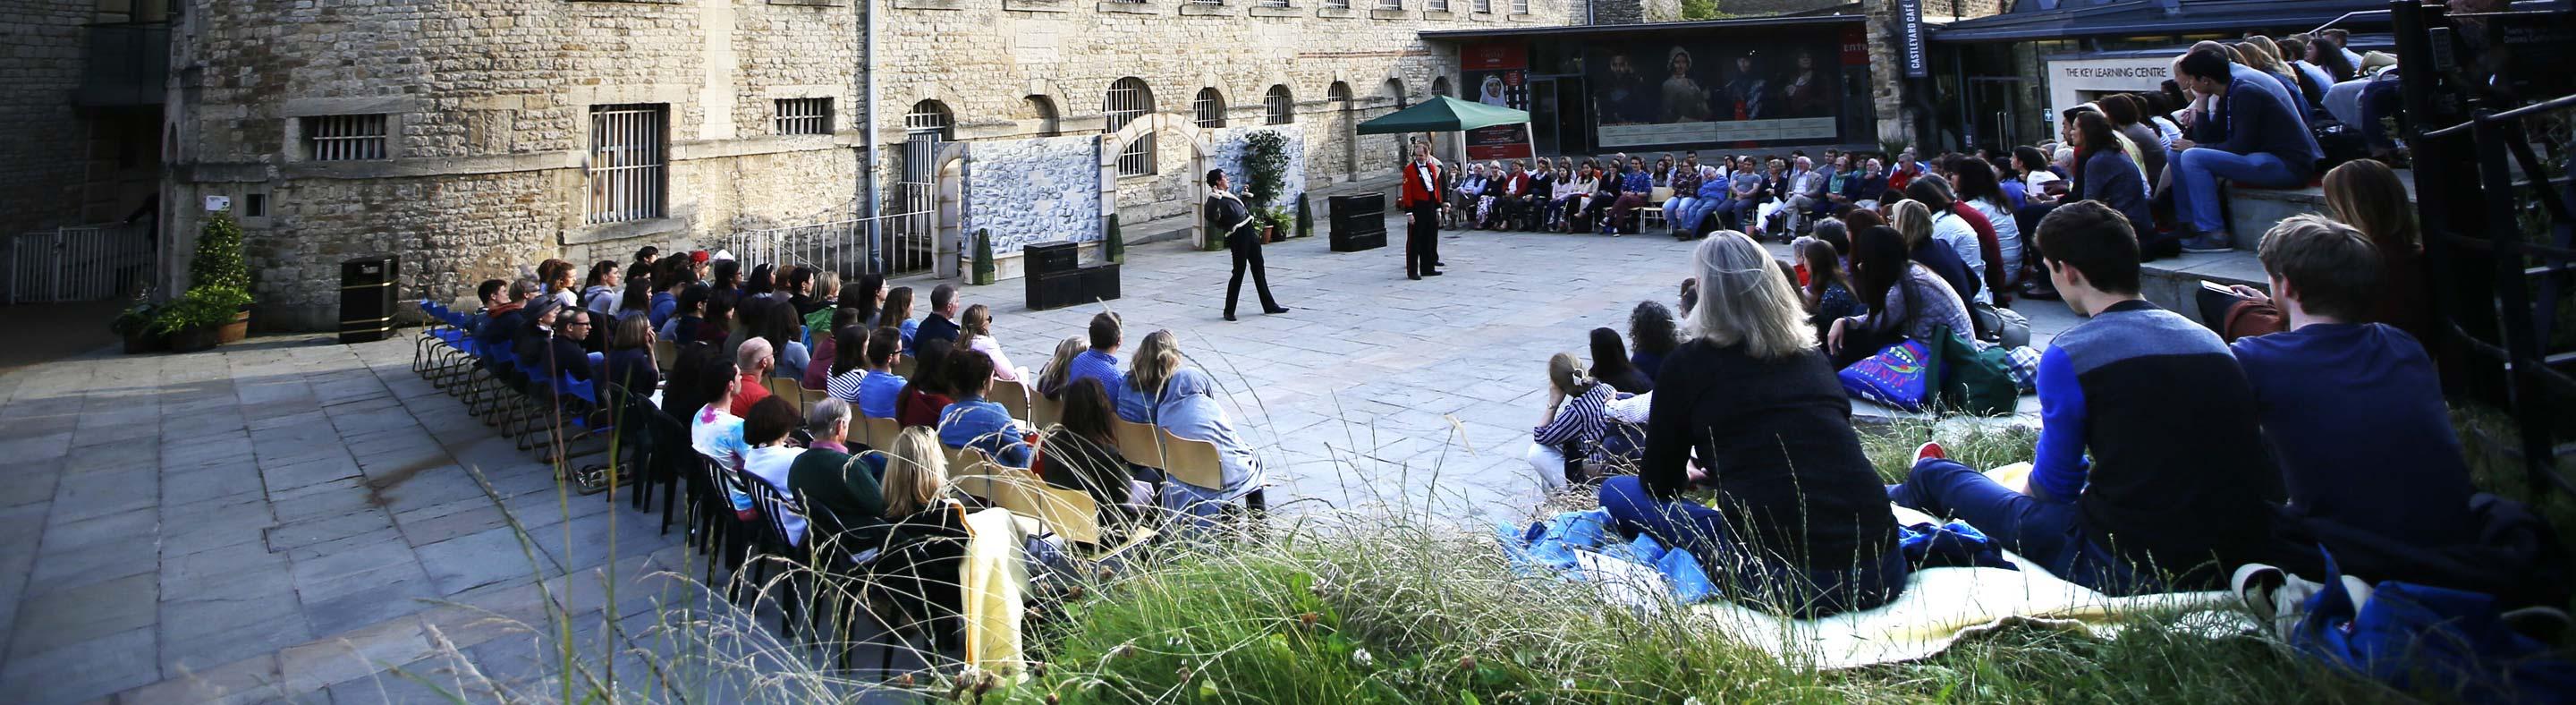 Oxford Prison and Castle Shakespeare Festival